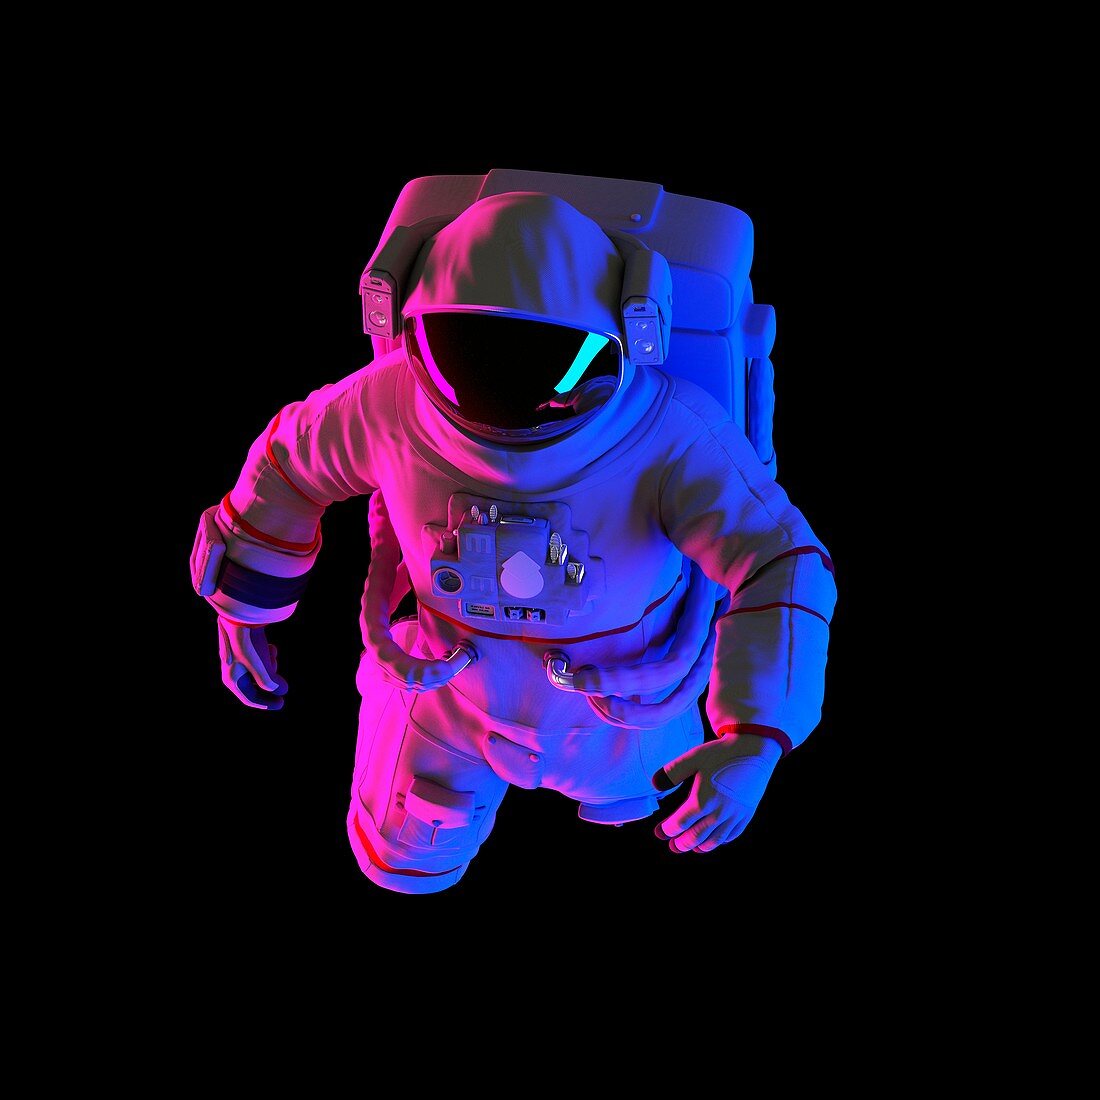 Astronaut, illustration